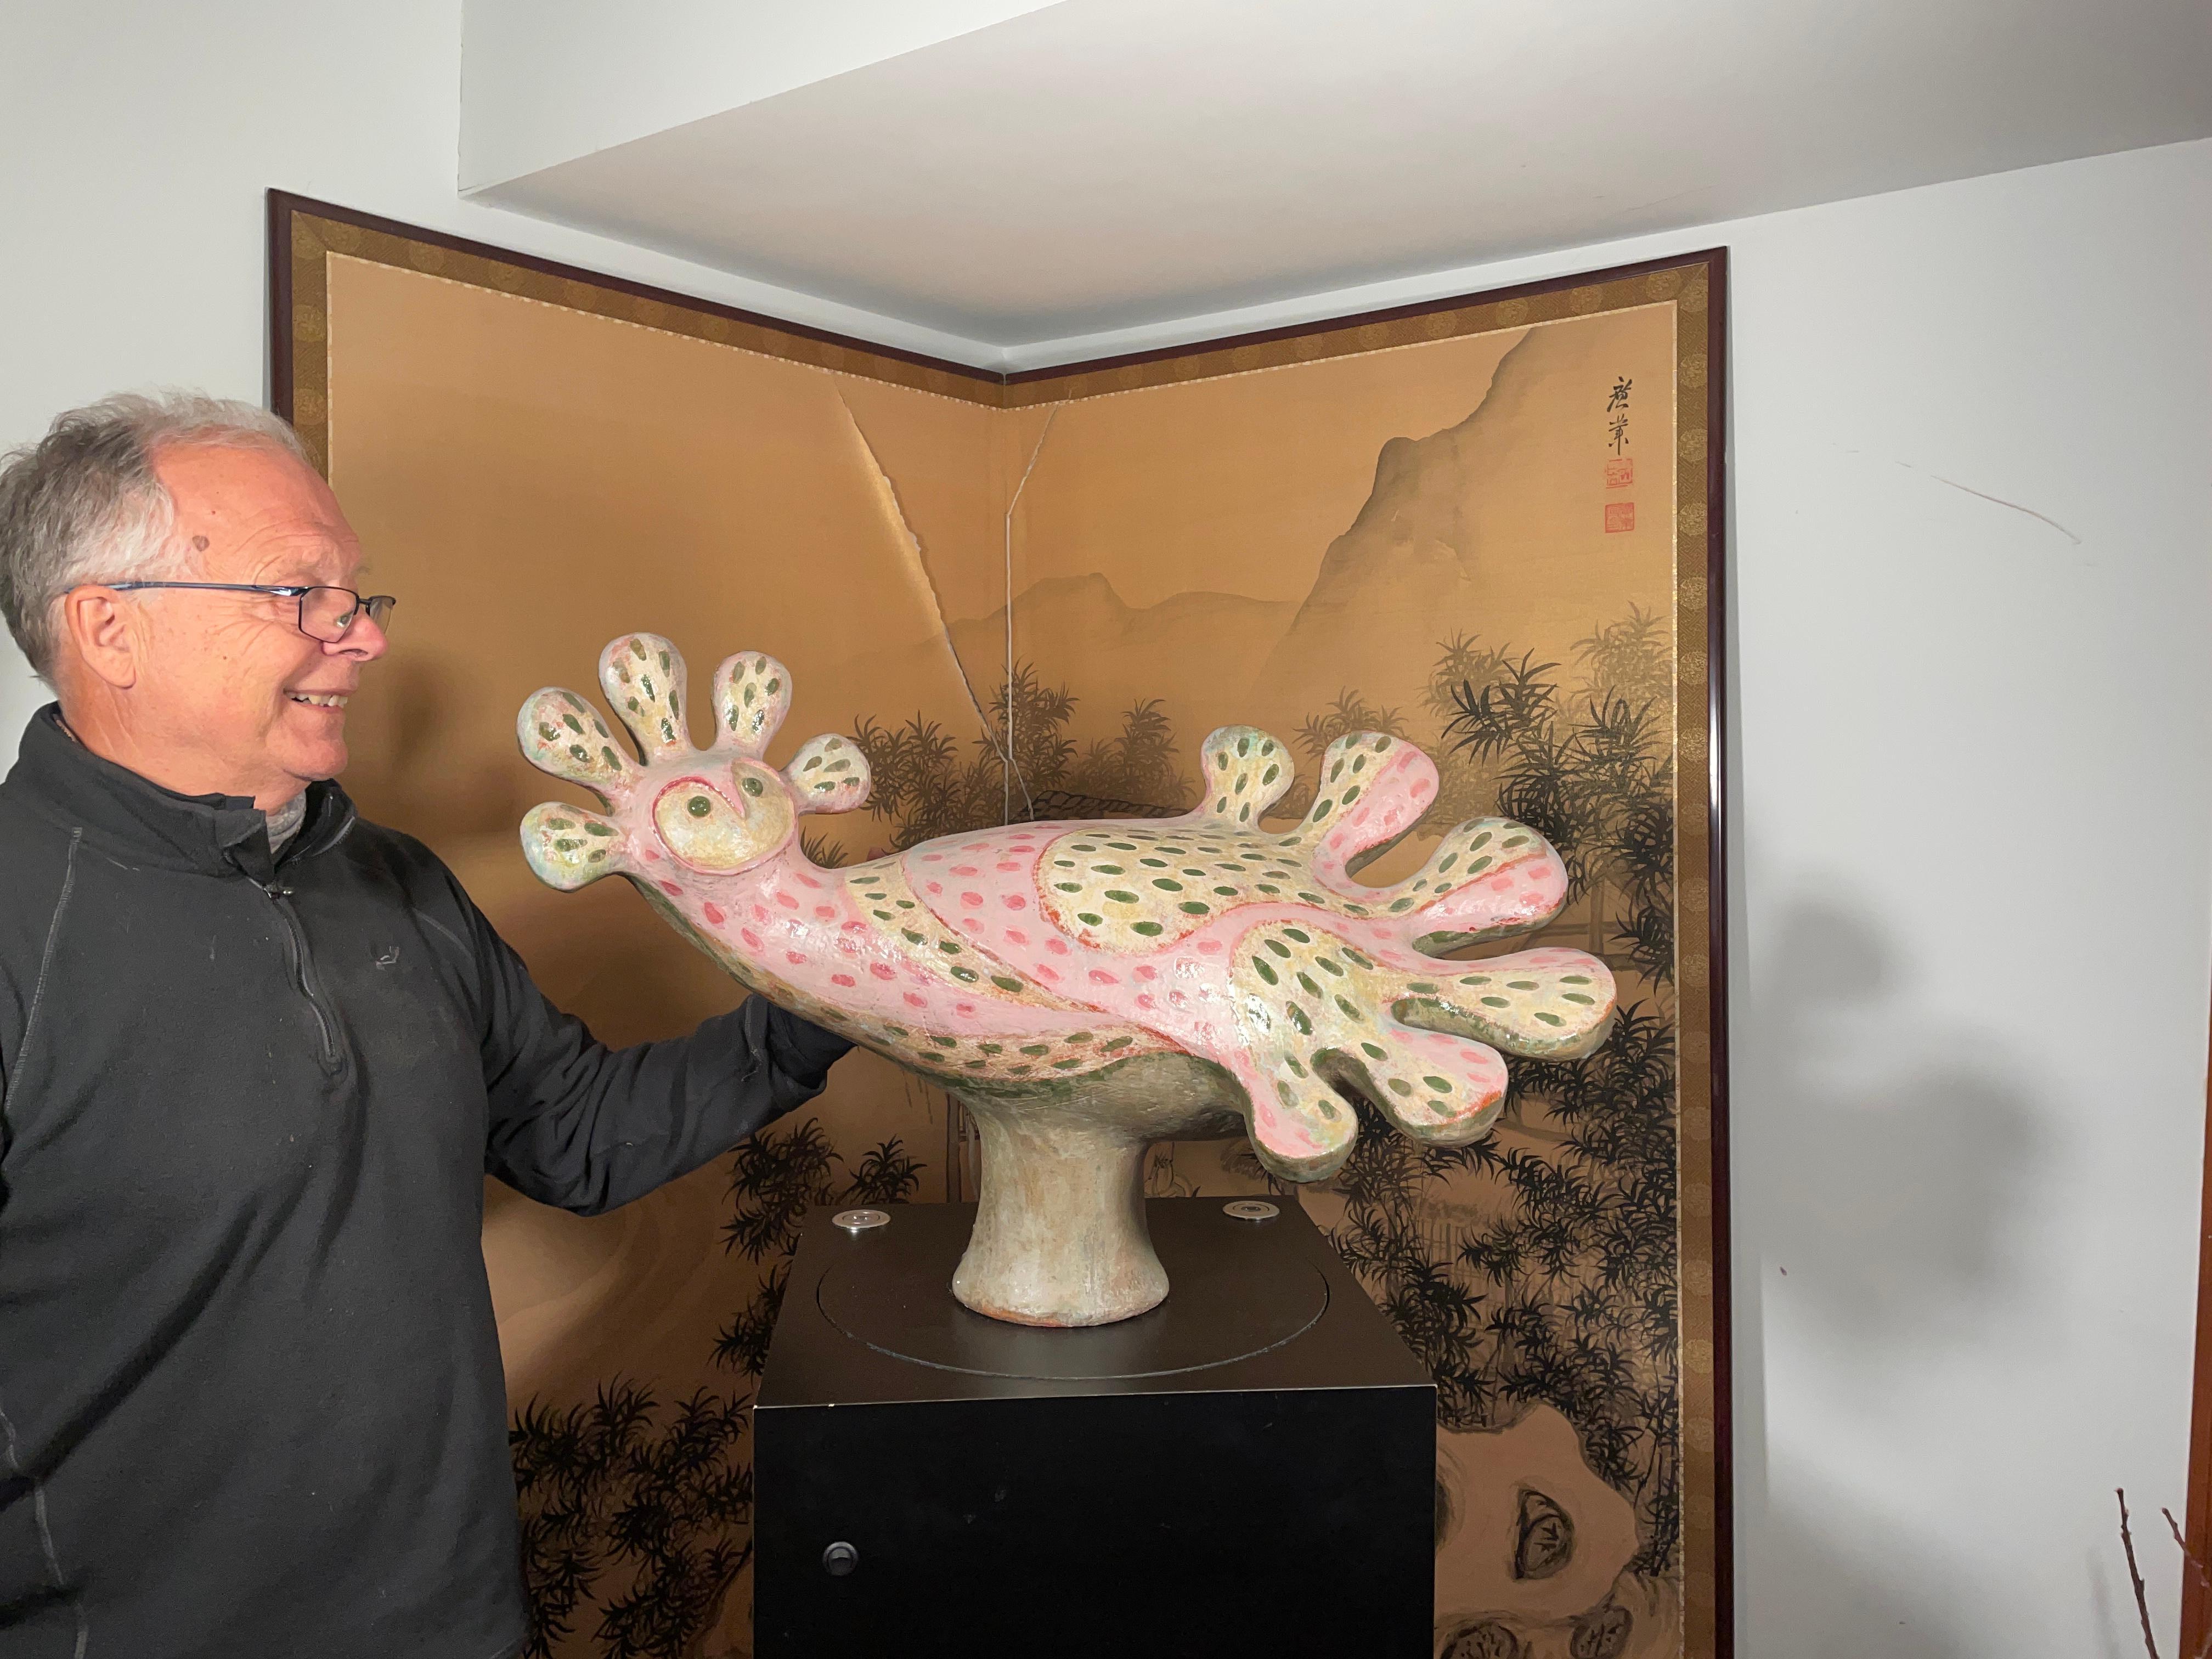 Einzigartige monumentale Paradiesvogel-Knuppelhuhn-Großplastik, geschaffen, handgefertigt und handbemalt von der Meisterdesignerin Eva Fritz-Lindner (1933-2017) um 1992.

Handgefertigt und handbemalt in schönen Farben von diesem Künstler.